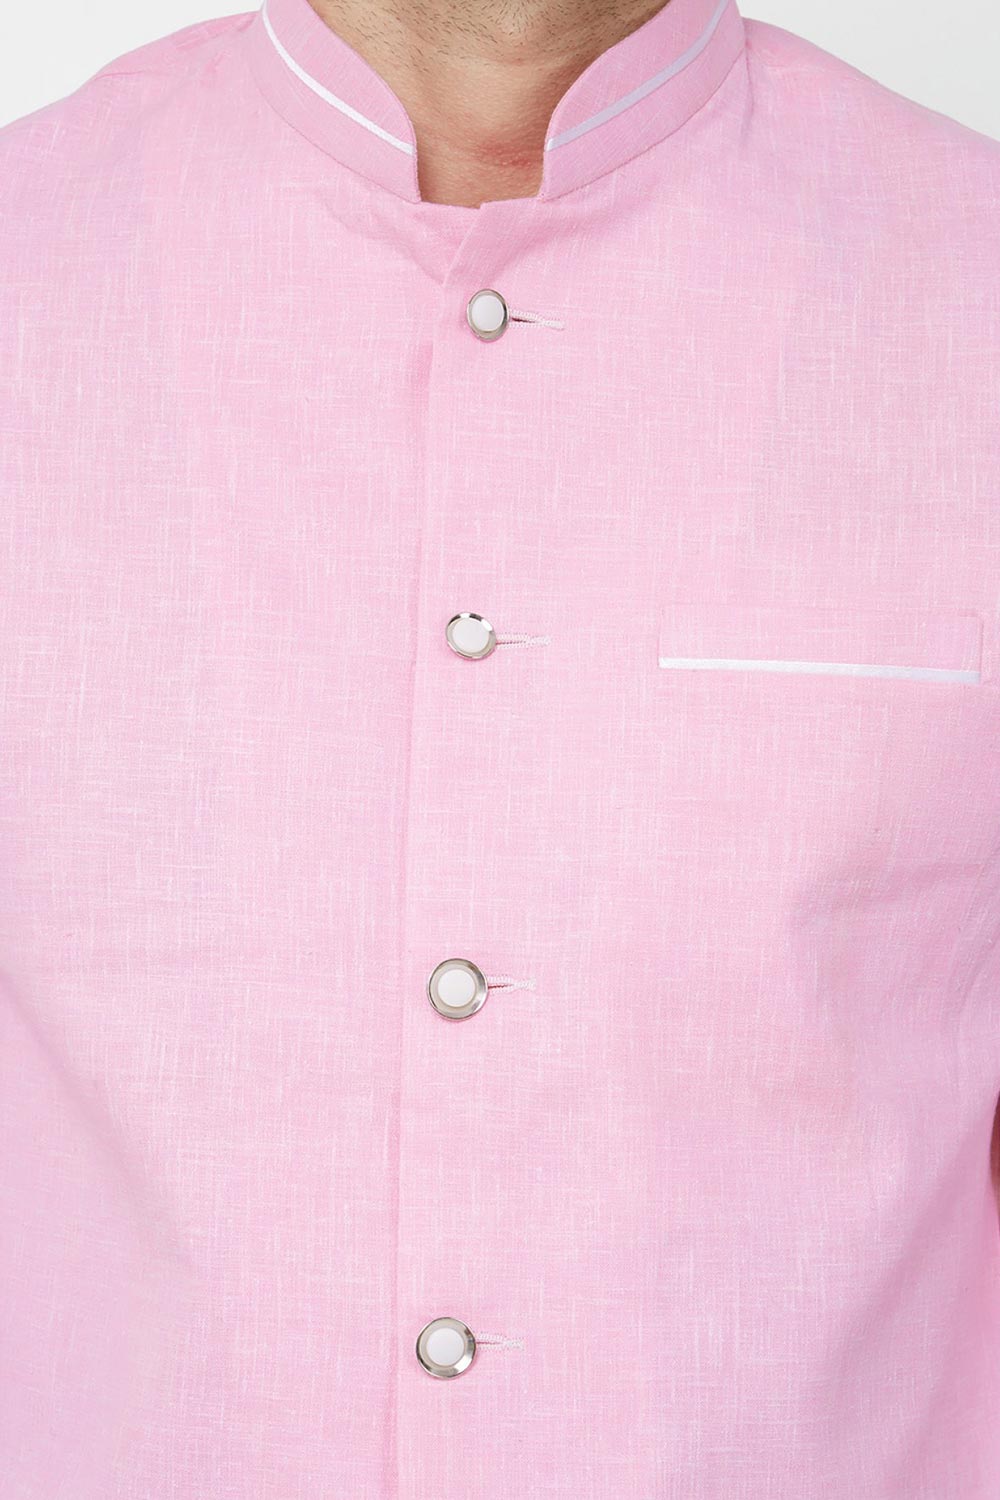 Buy Men's Linen solid Jodhpuri Set in Baby Pink Online - Front